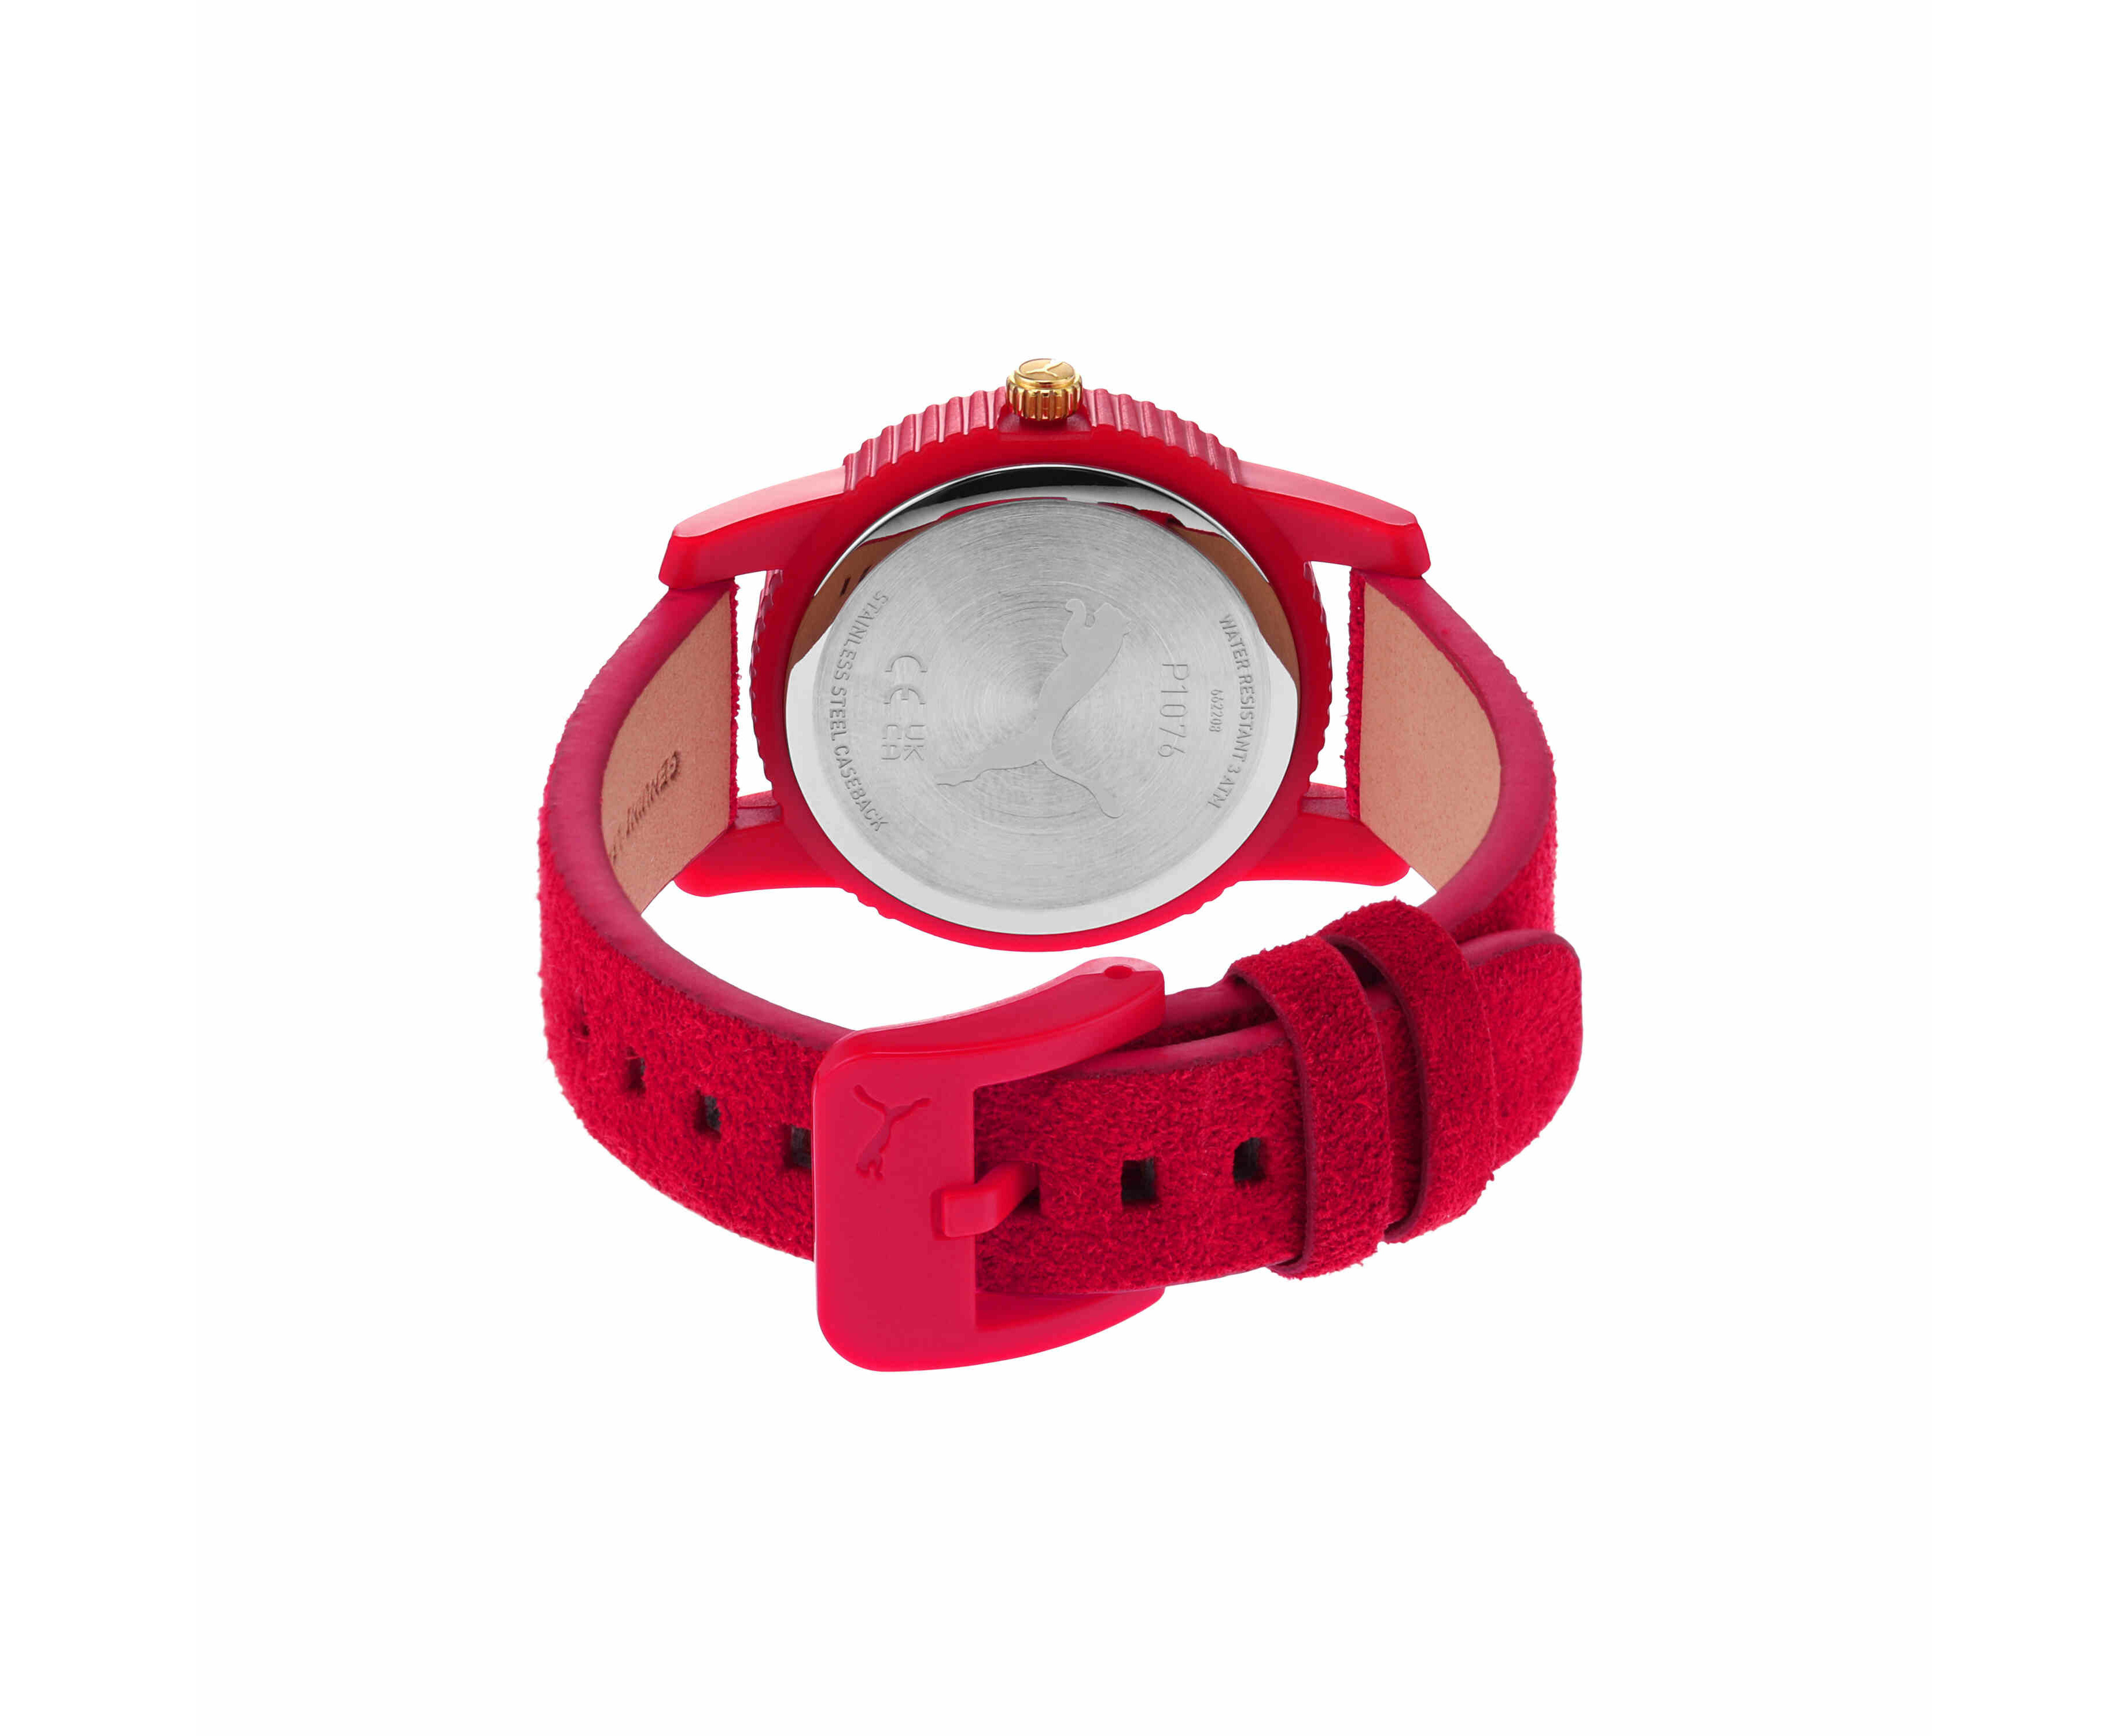 PUMA Ultrafresh Red Watch P1076 | M.catch.com.au